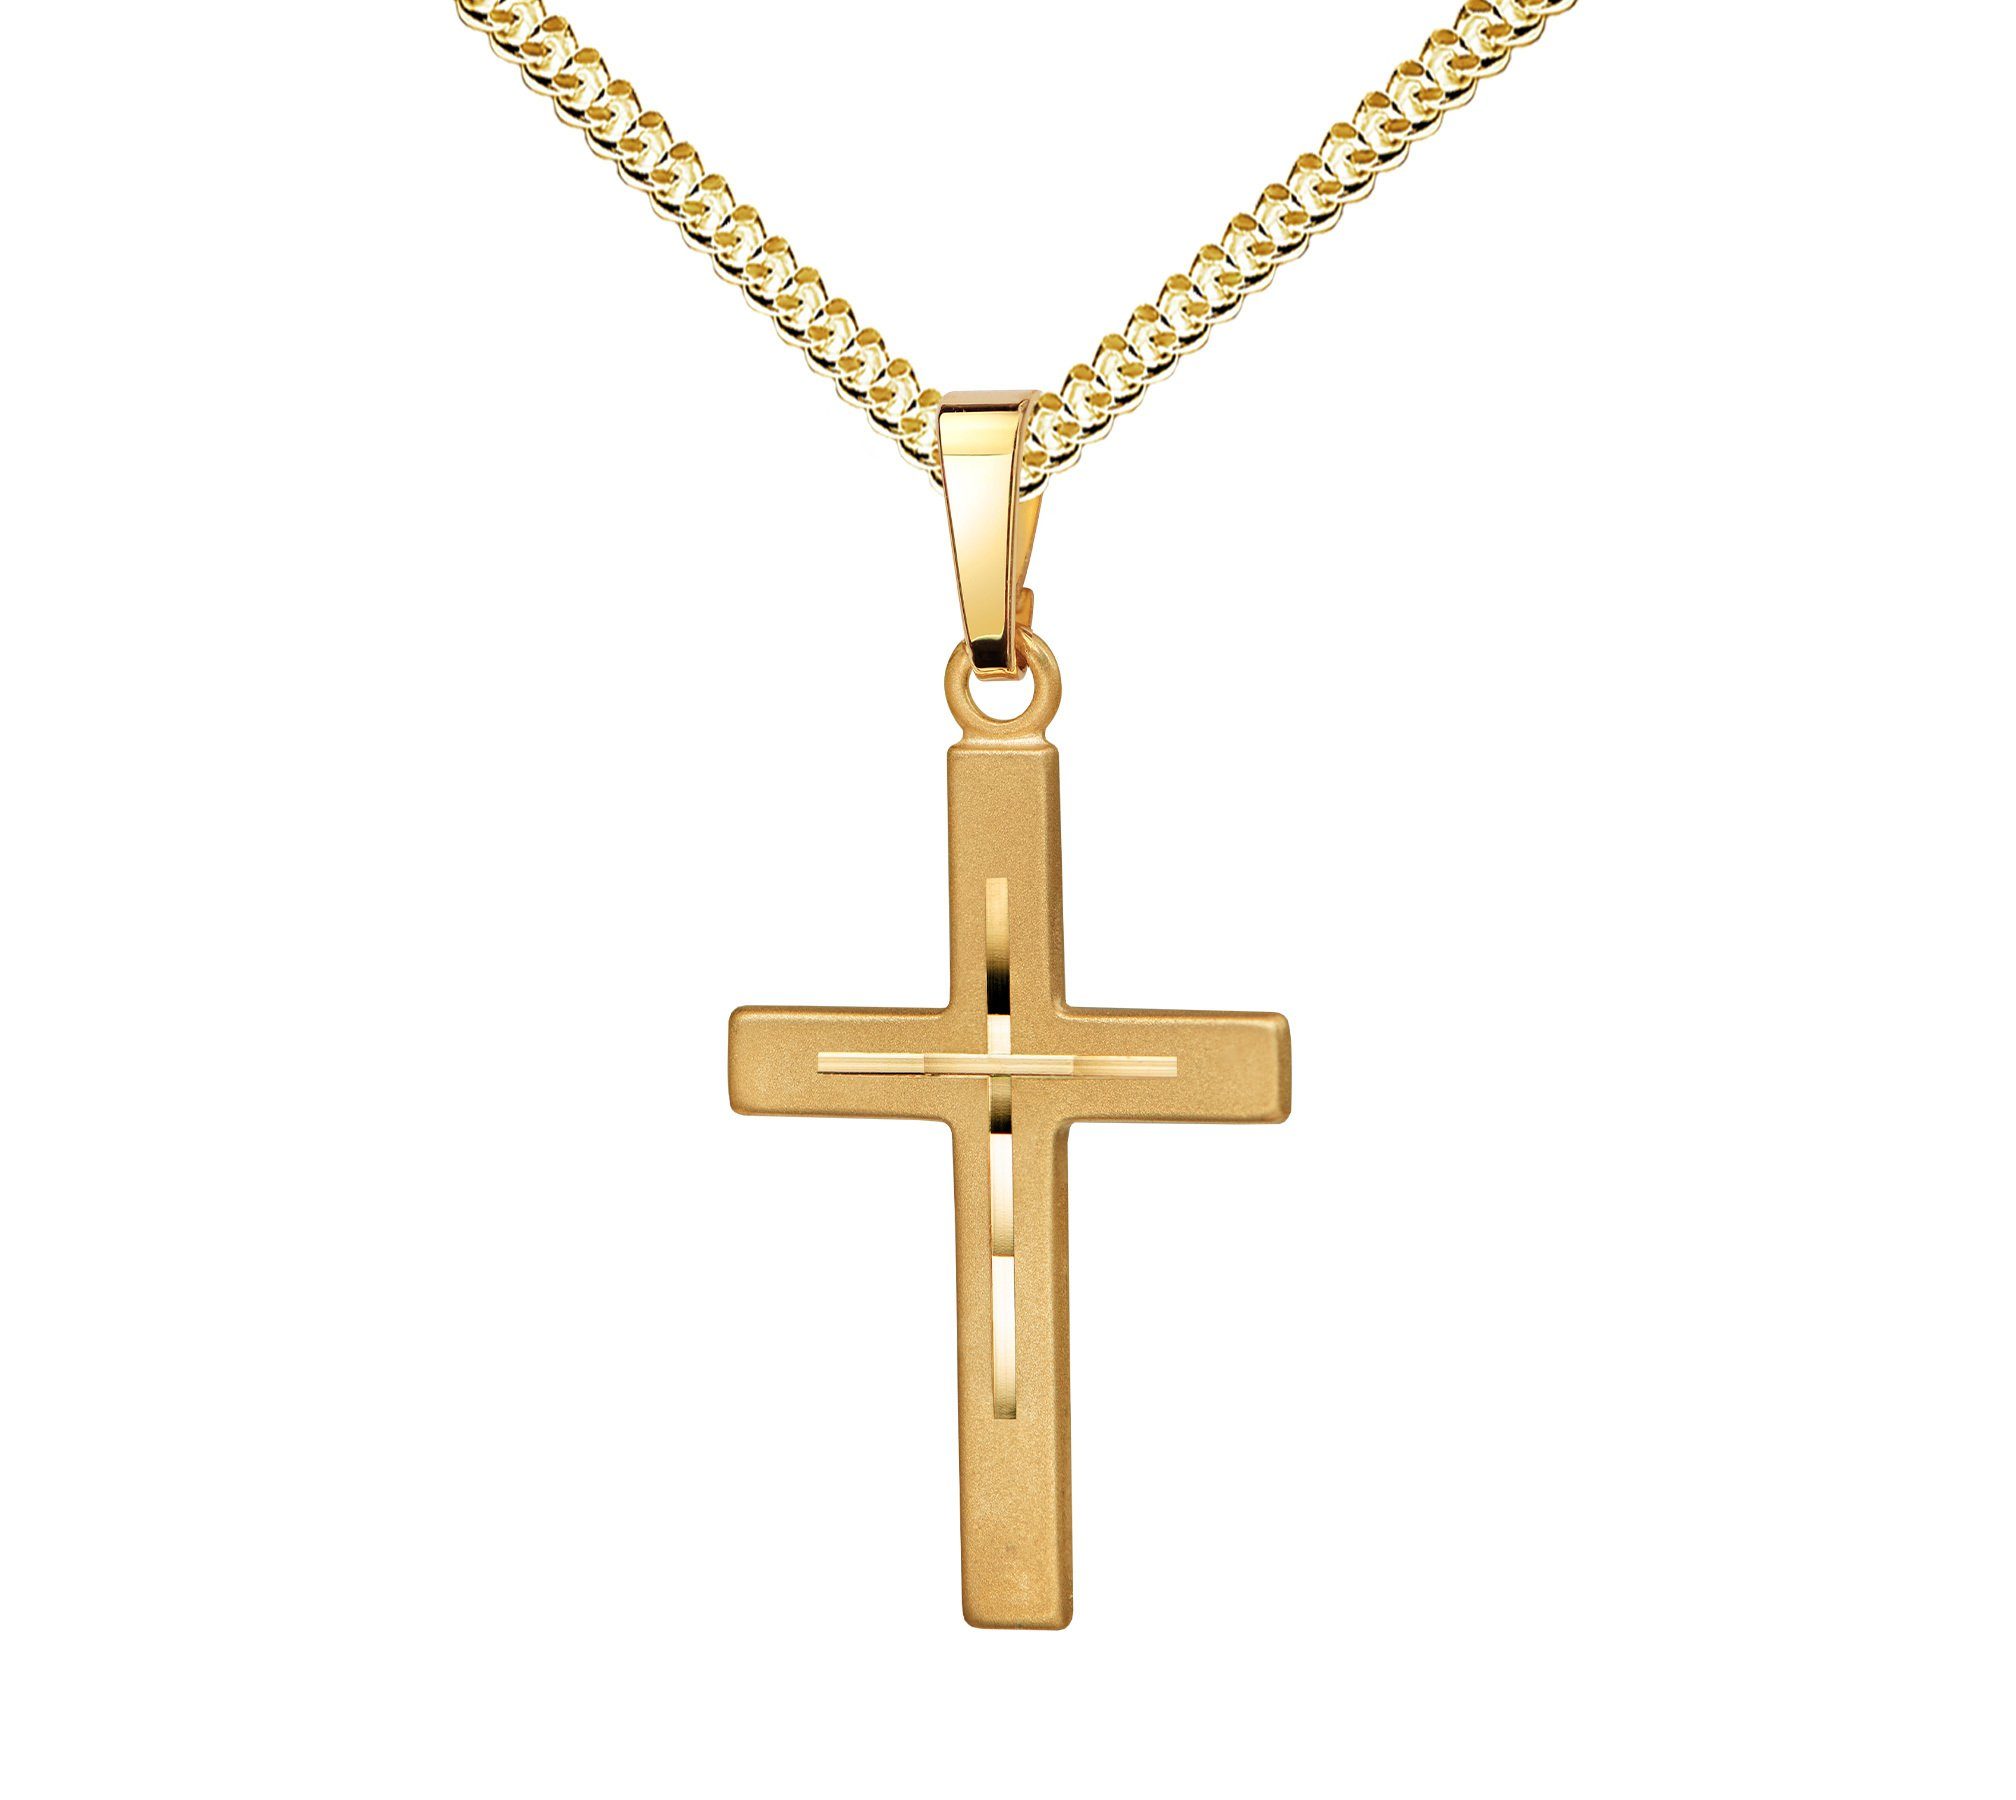 JEVELION Kreuzkette 333 Gold Anhänger mit Diamantschliff - Made in Germany (Goldkreuz, für Damen und Herren), Mit Kette vergoldet- Länge wählbar 36 - 70 cm oder ohne Kette.